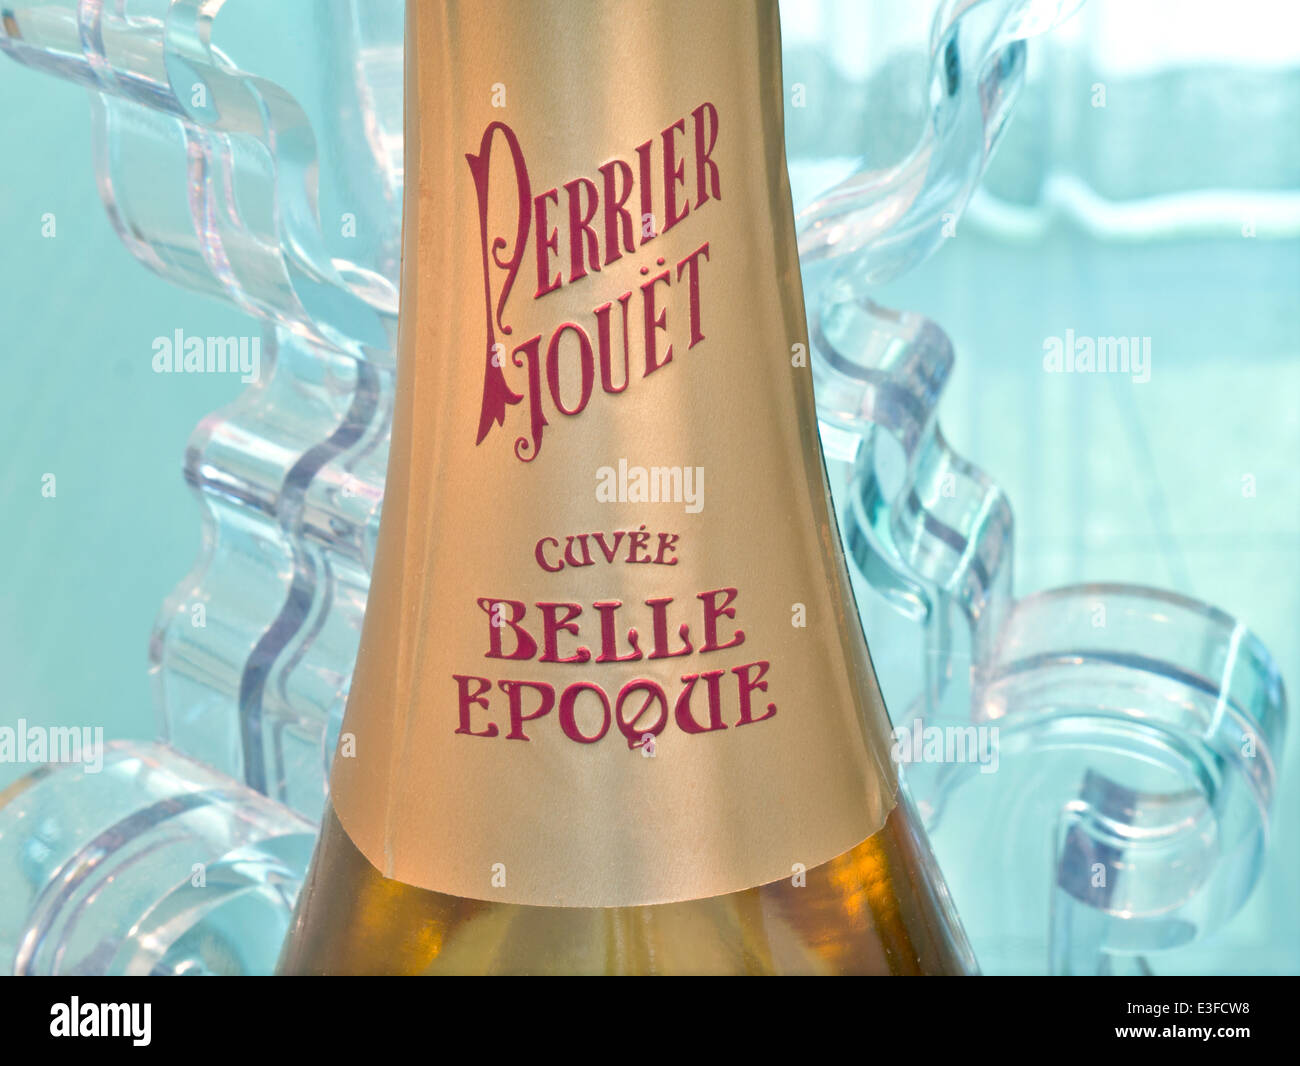 Belle EPOQUE Perrier Jouet cuvee Belle Epoque feine luxuriöse Champagnerflasche in guter Lage in der Restaurantbar Stockfoto